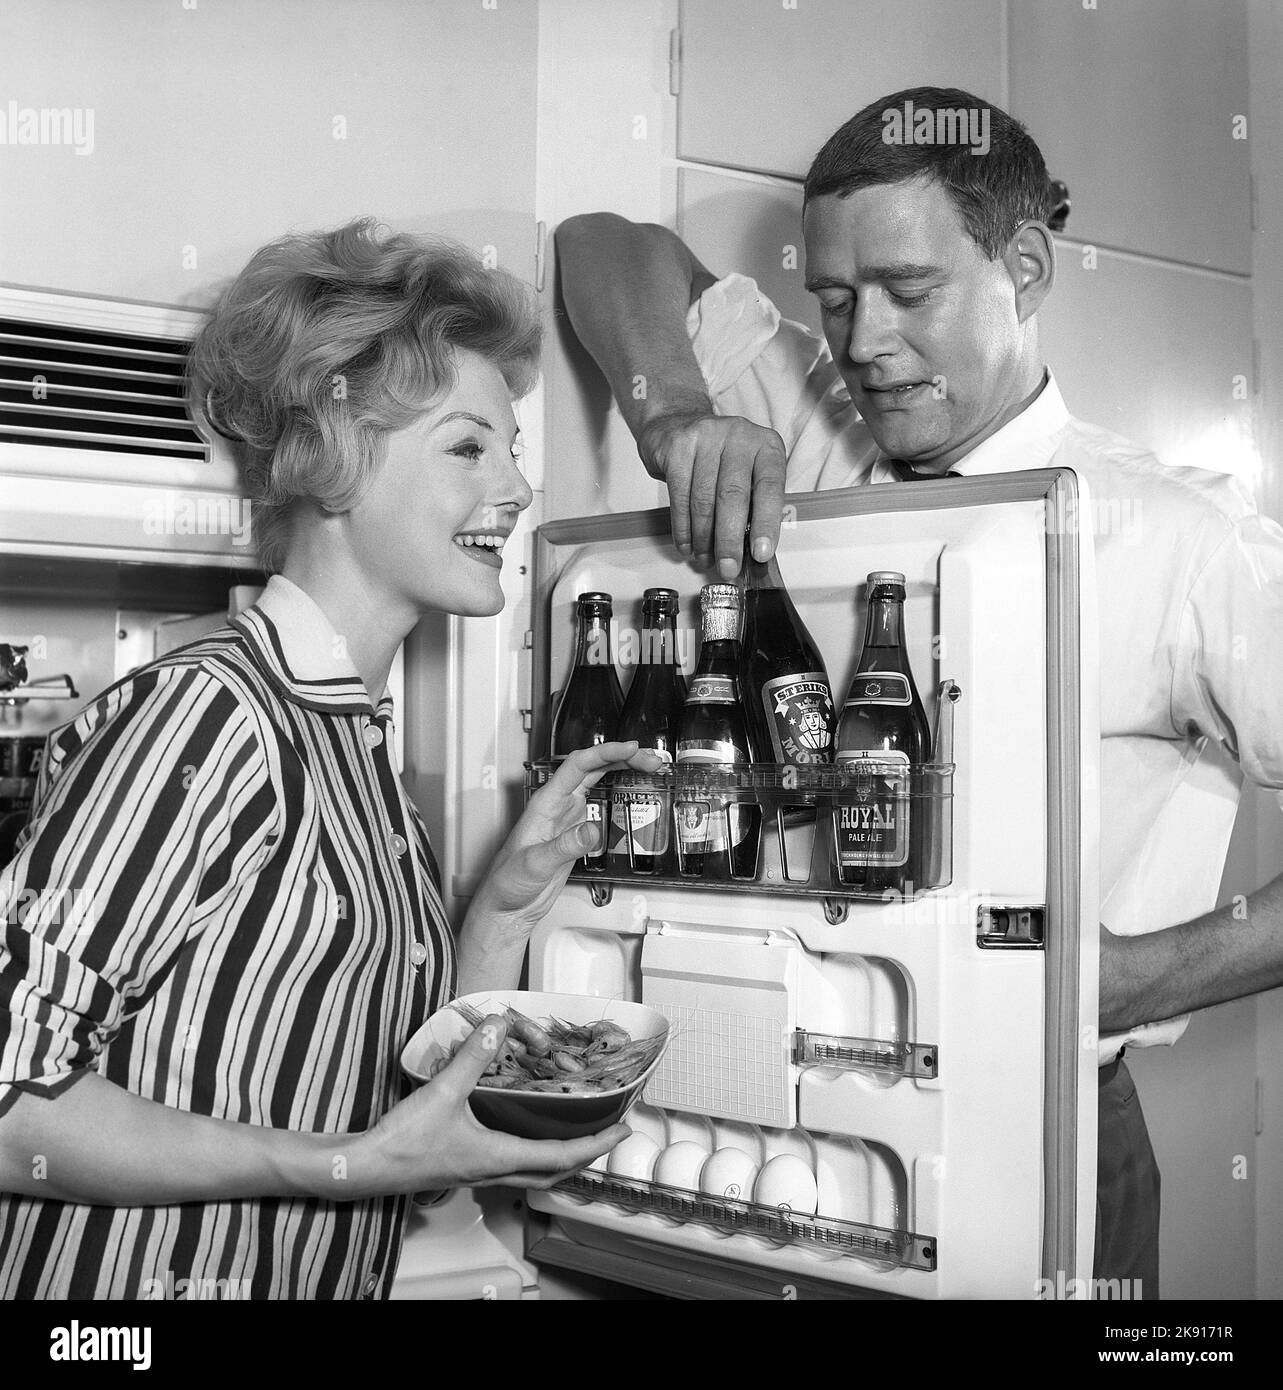 In cucina 1950s. Una coppia in cucina e nel frigorifero dove la birra è tenuta nella mensola della porta. Si vedono cinque bottiglie di birra. La signora tiene una ciotola di gamberetti. Svezia 1959. Kristoffersson rif CH77-2 Foto Stock